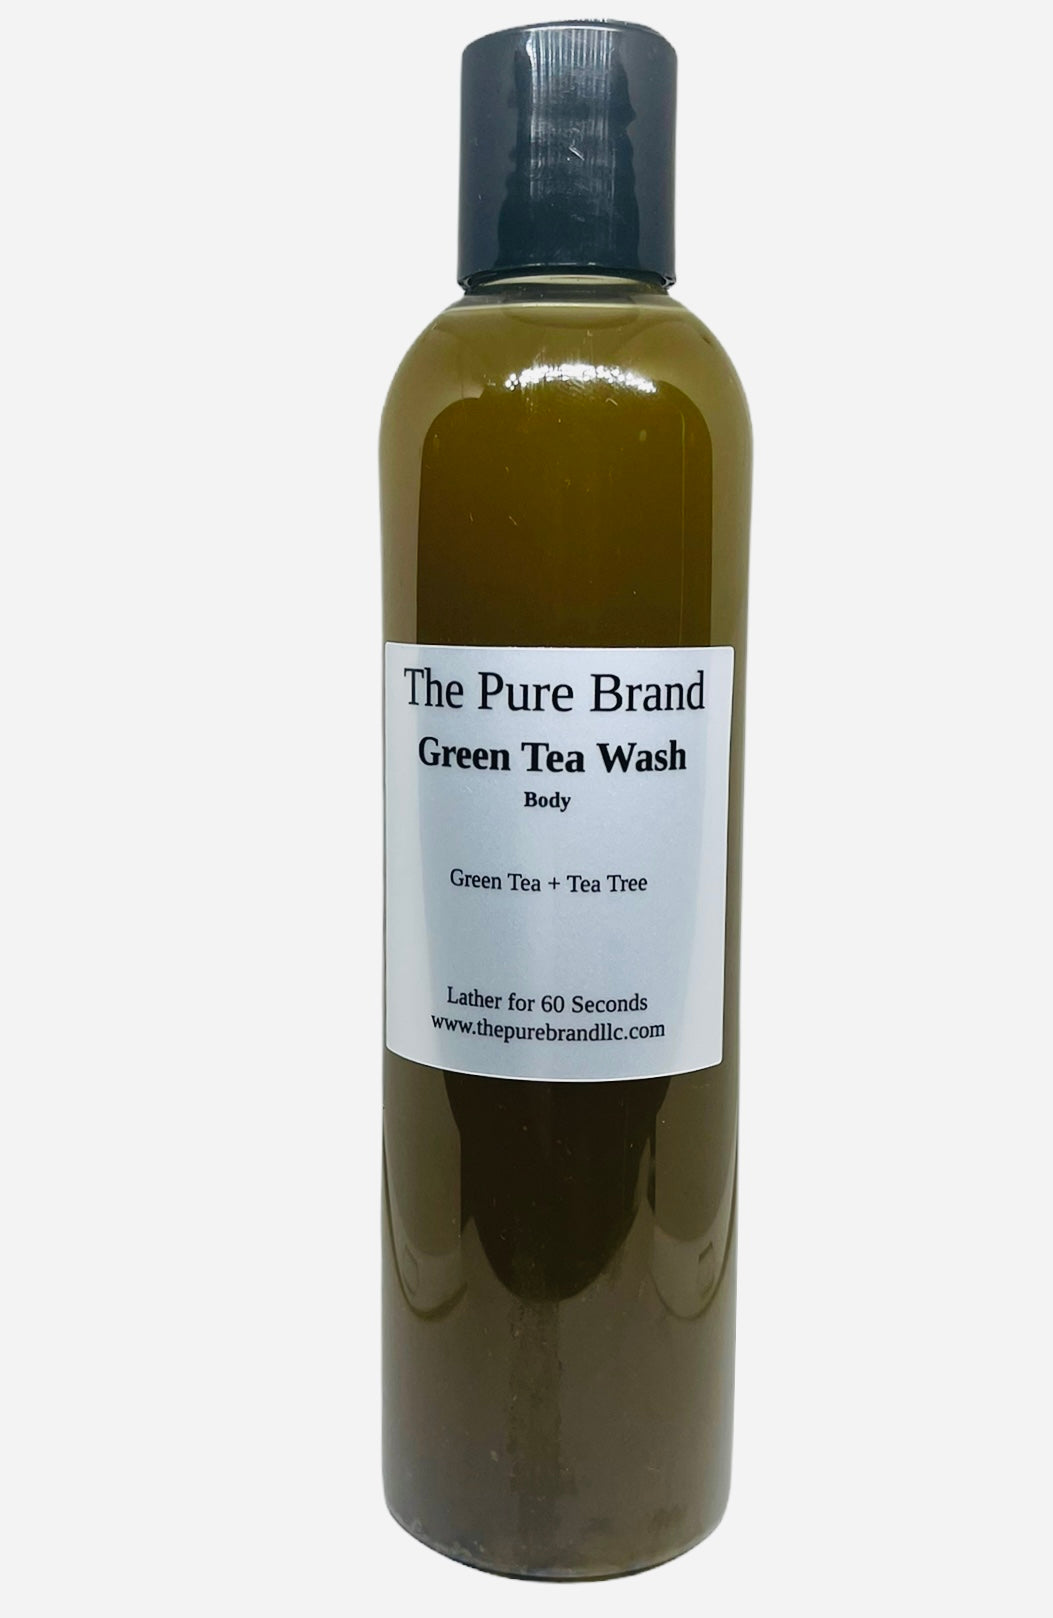 Green Tea + Tea Tree Body Wash